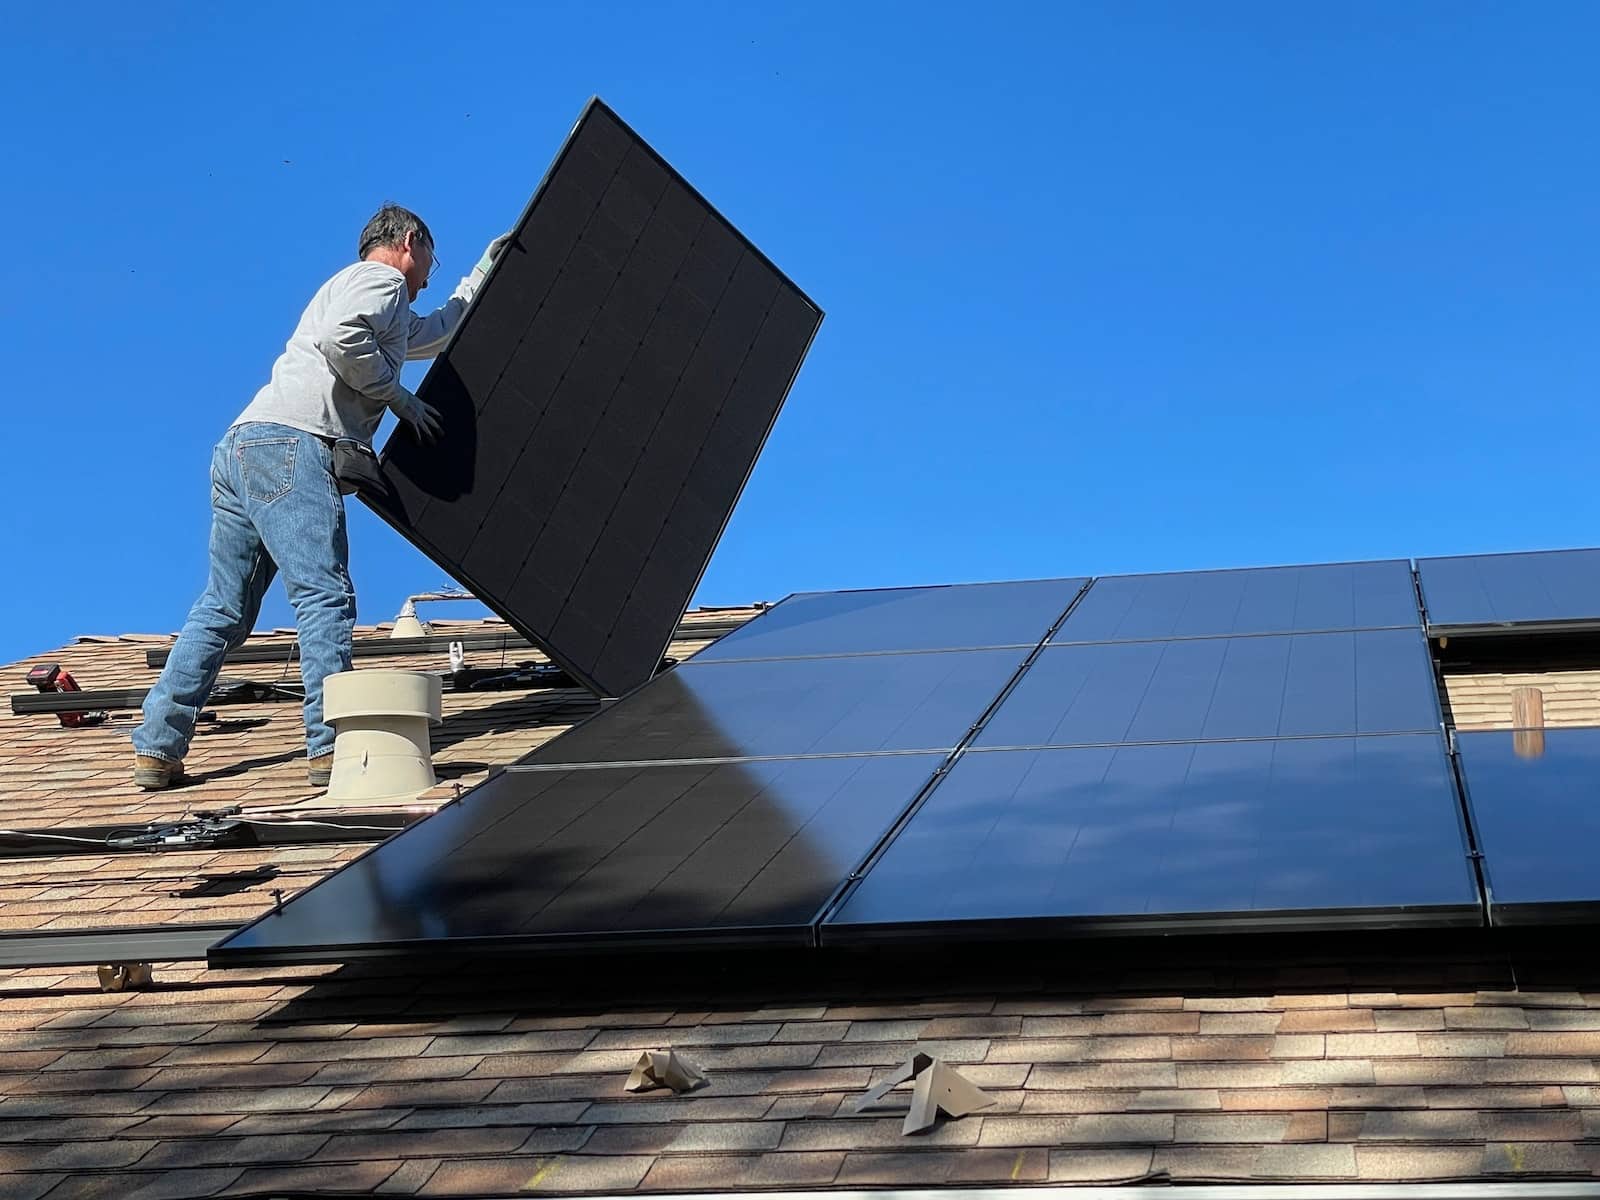 pour votre installation de panneaux solaires, mieux vaut faire appel à un installateur agréé